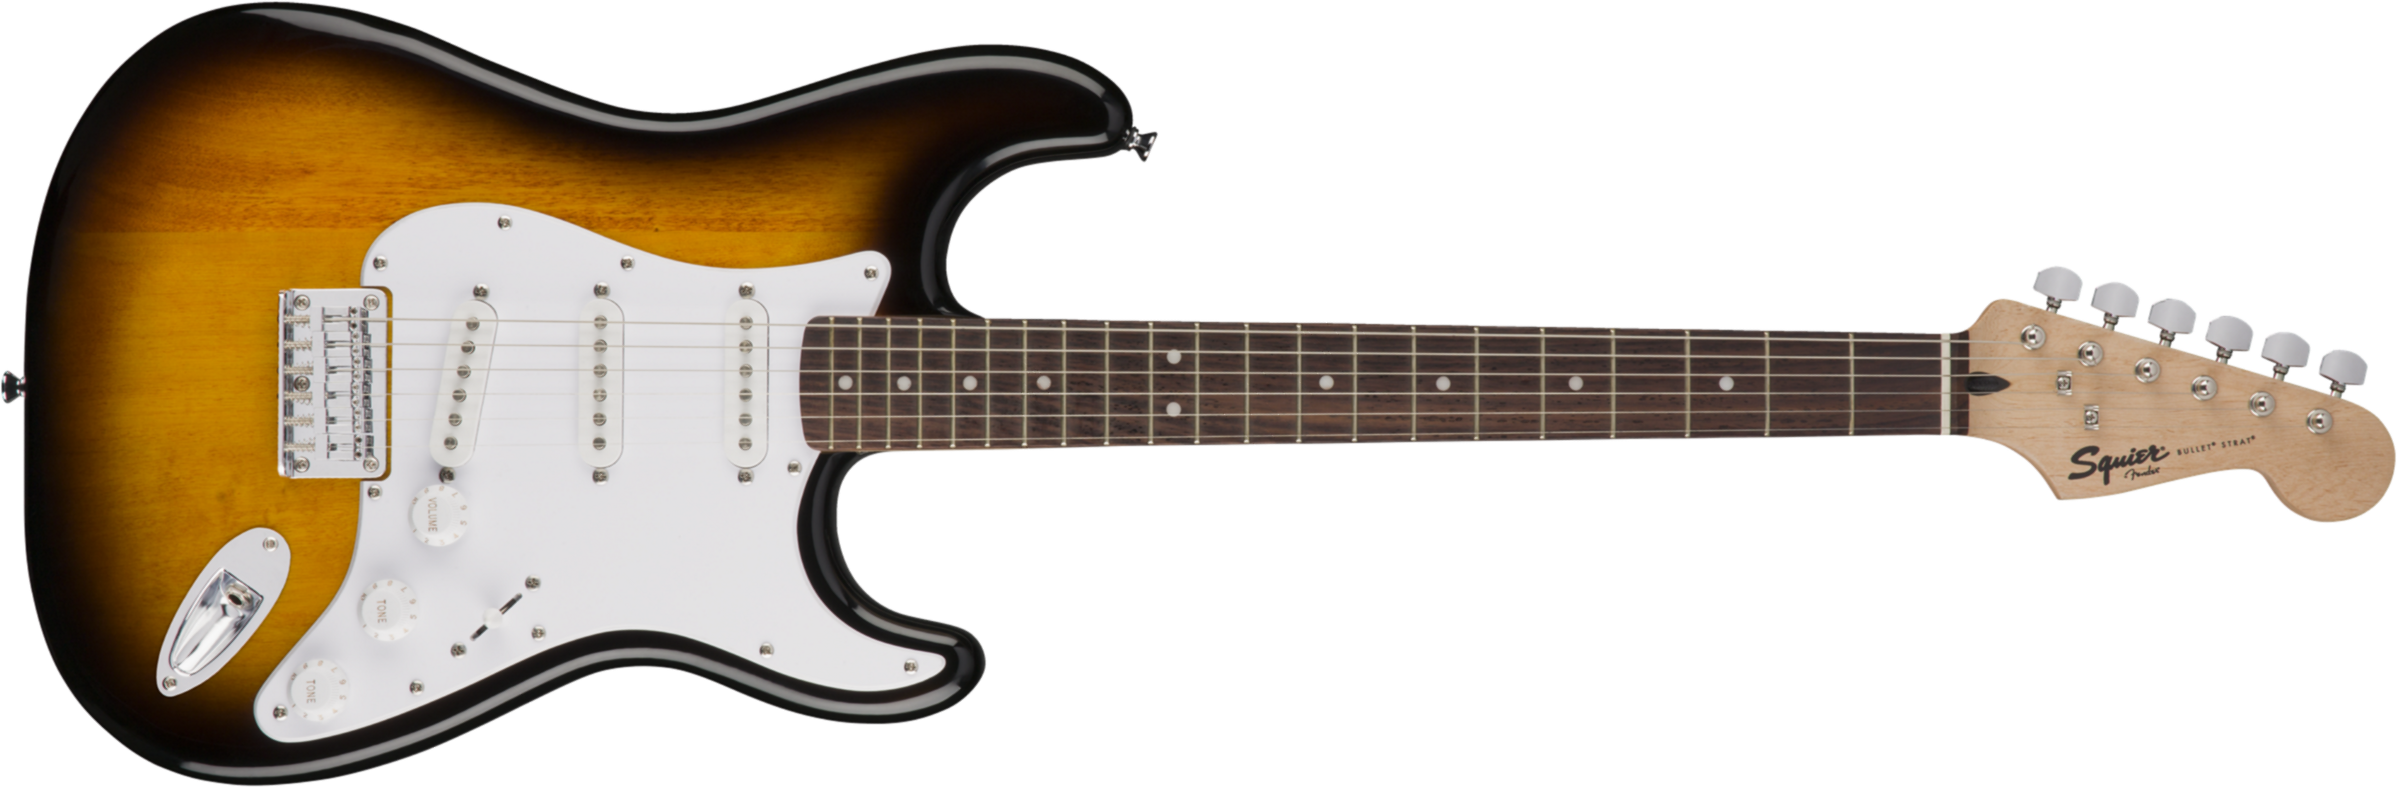 Squier Bullet Stratocaster Ht Sss Lau - Brown Sunburst - Guitarra eléctrica con forma de str. - Main picture